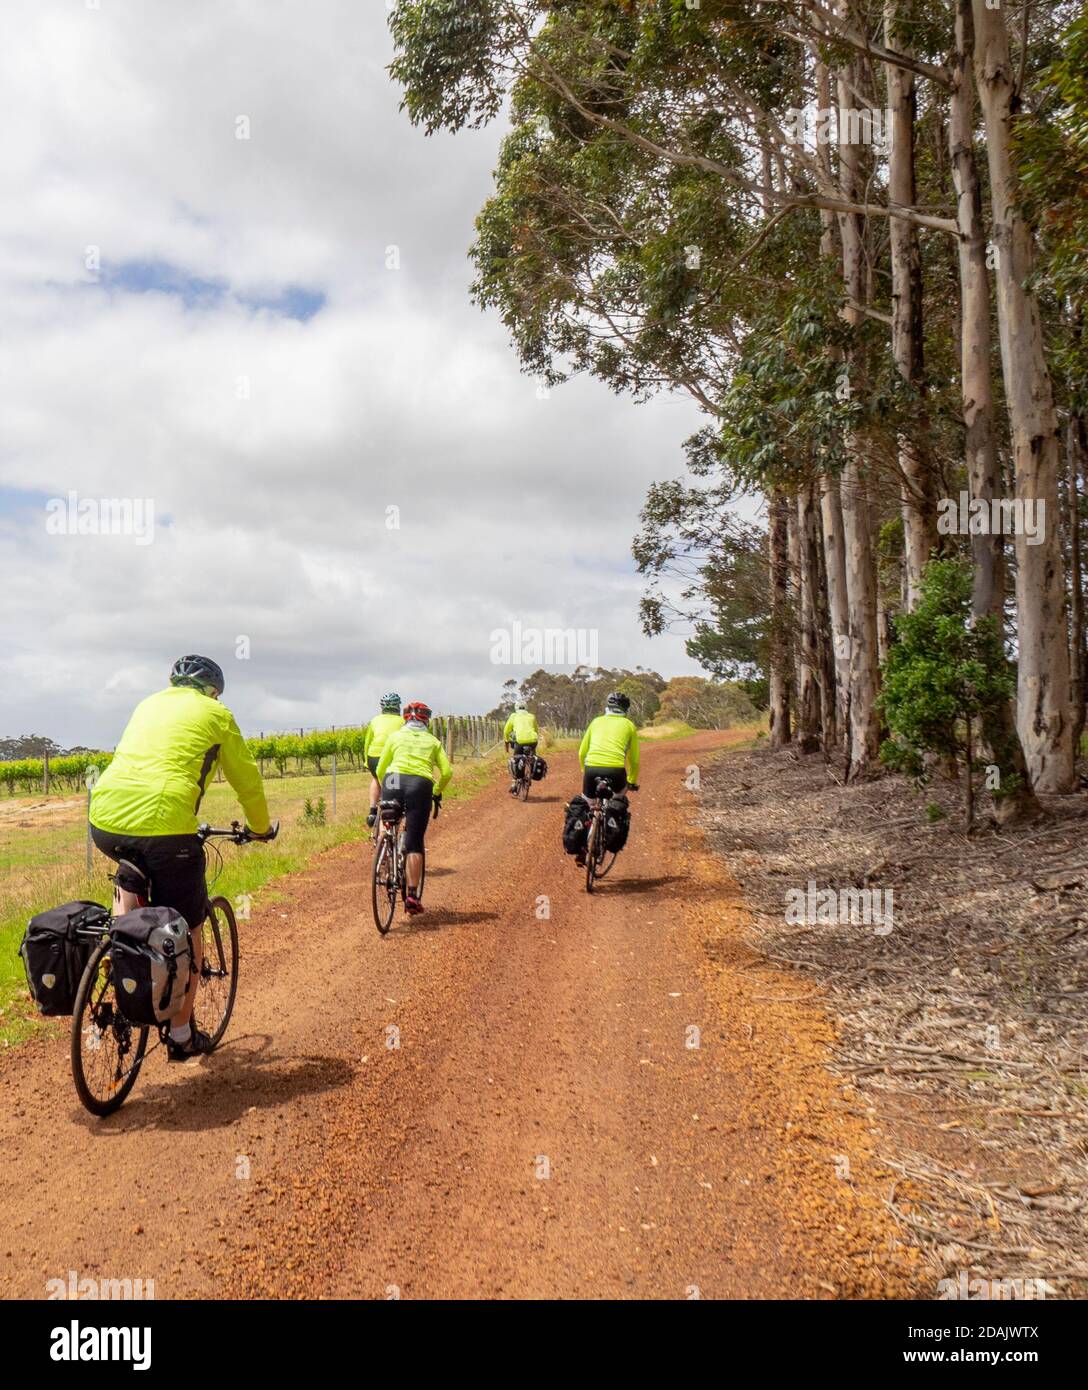 Les cyclistes voyageant sur des vacances à vélo sur un pays Route dans la région de Margaret River Australie occidentale Banque D'Images